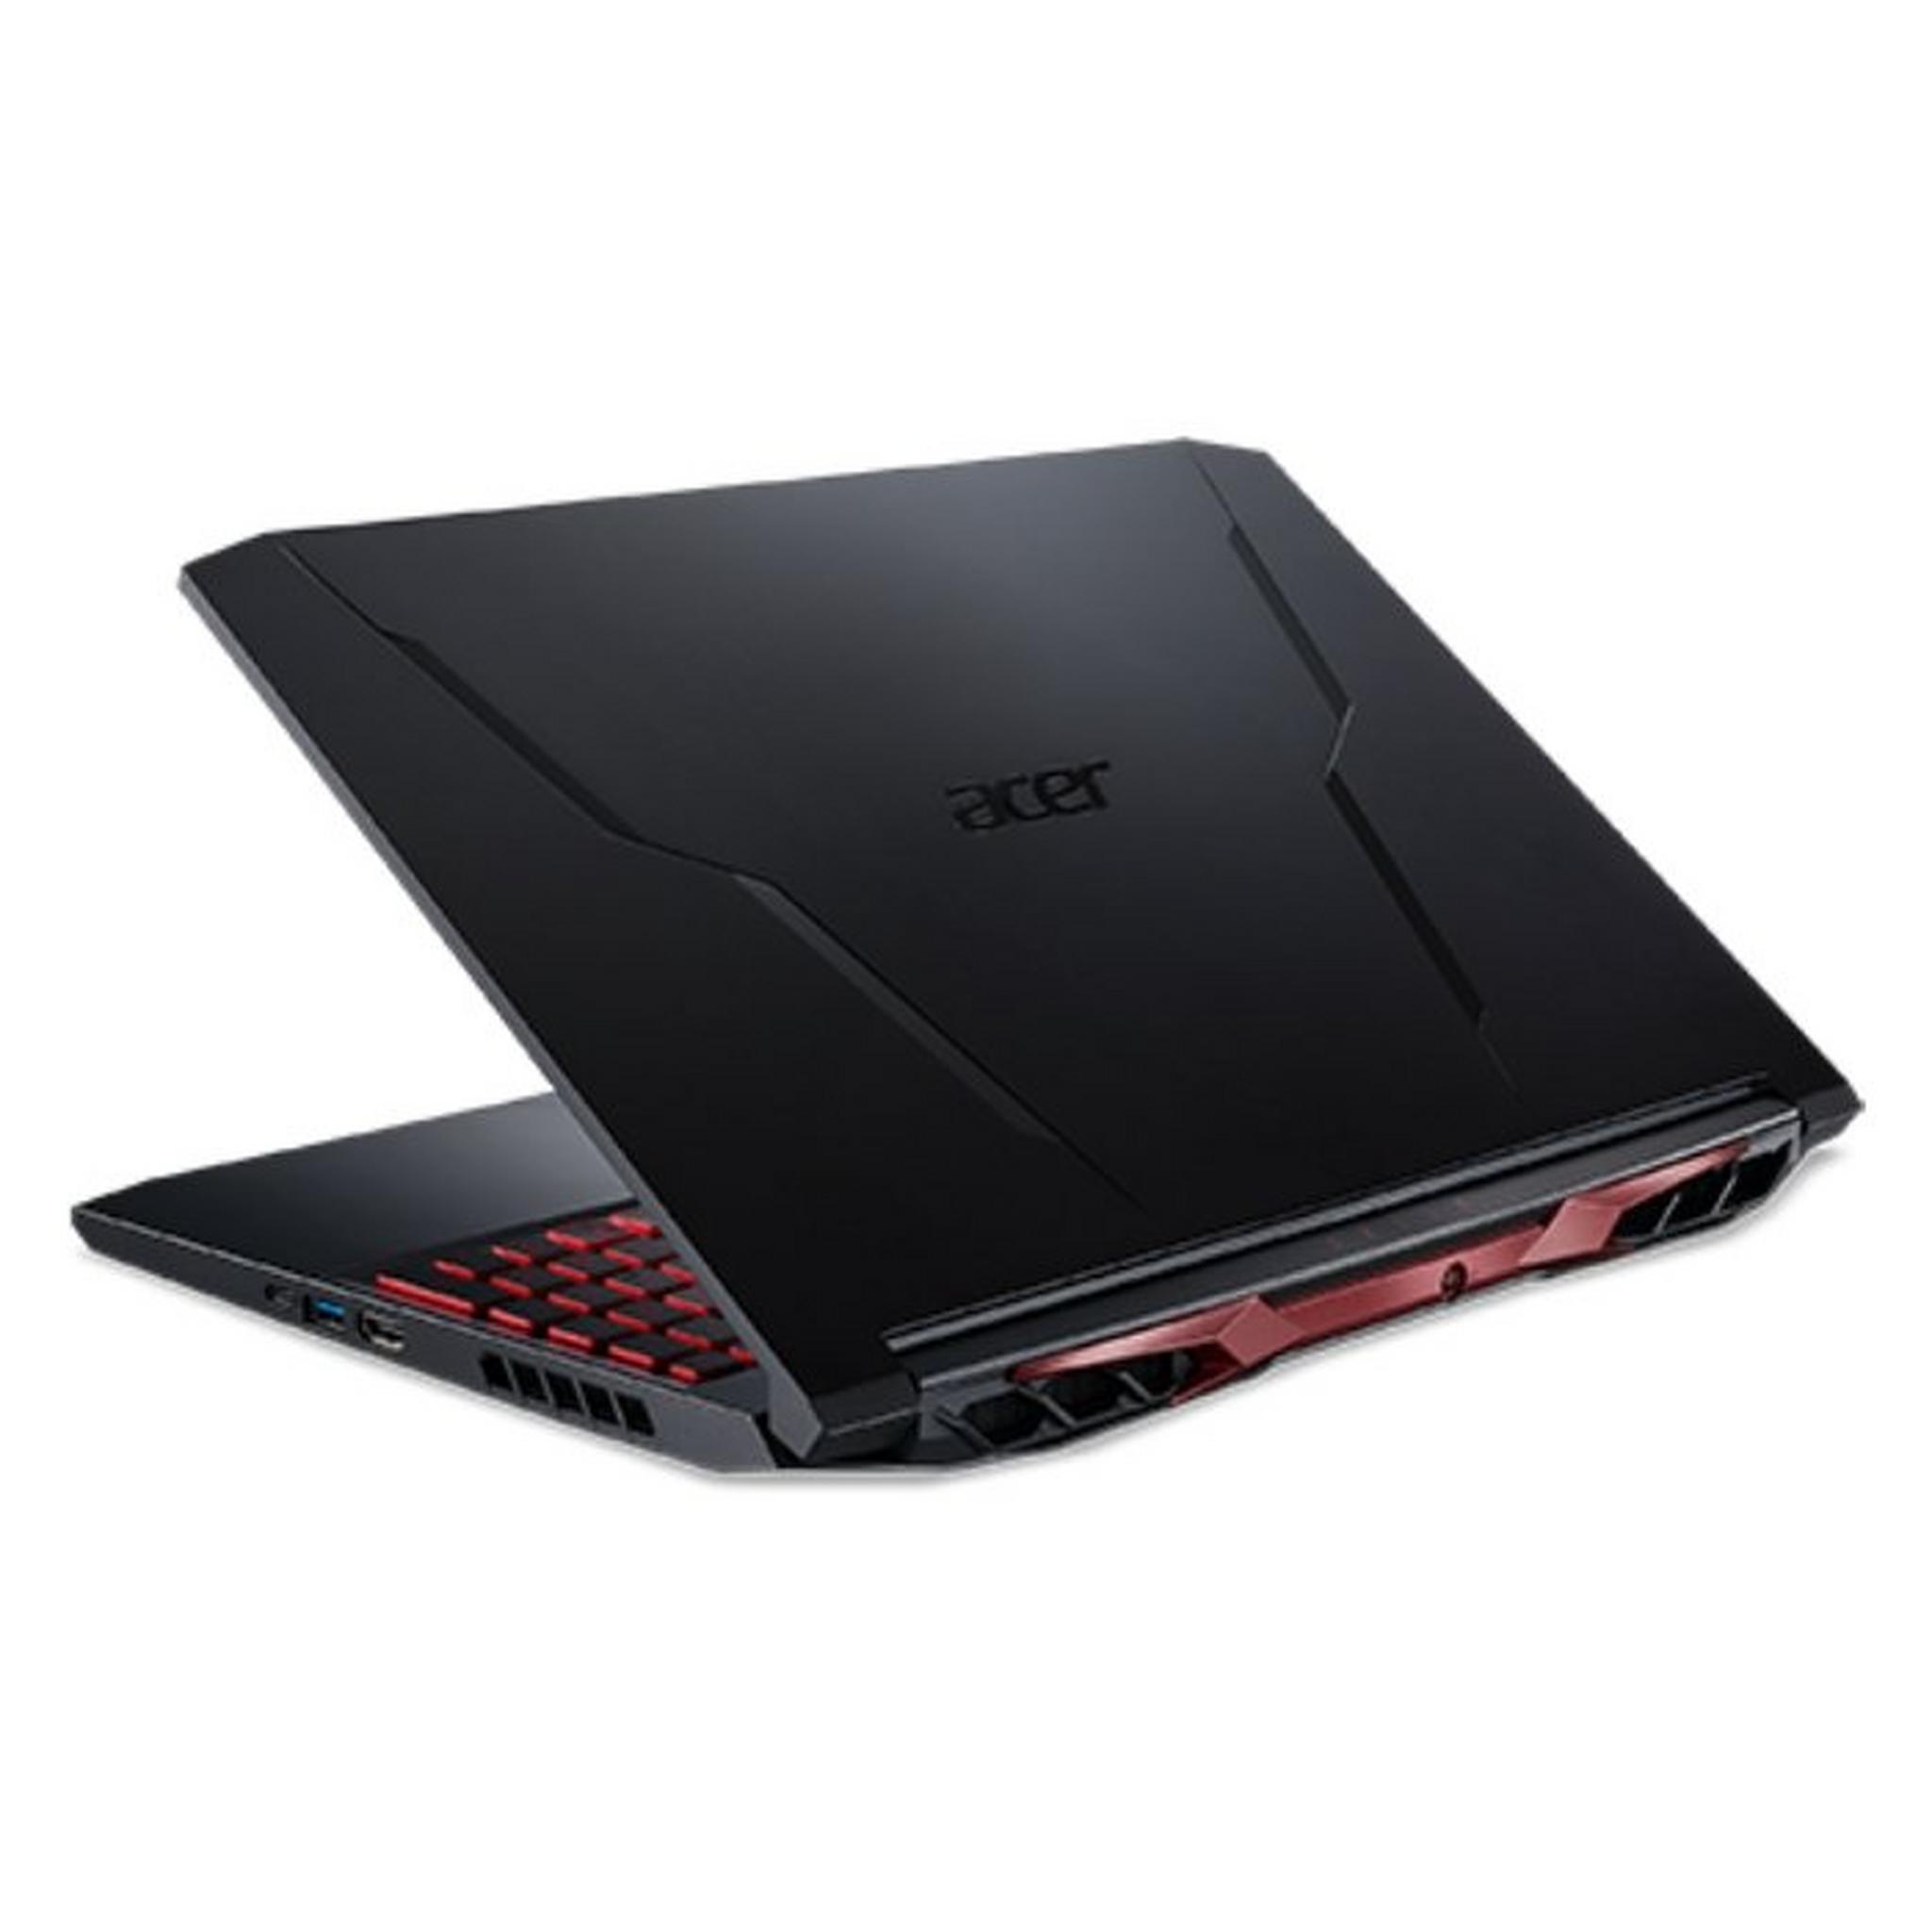 Acer Nitro 5 AMD Ryzen 5, 8GB RAM, 256GB SSD + 1TB HDD, 15.6-inch Gaming Laptop